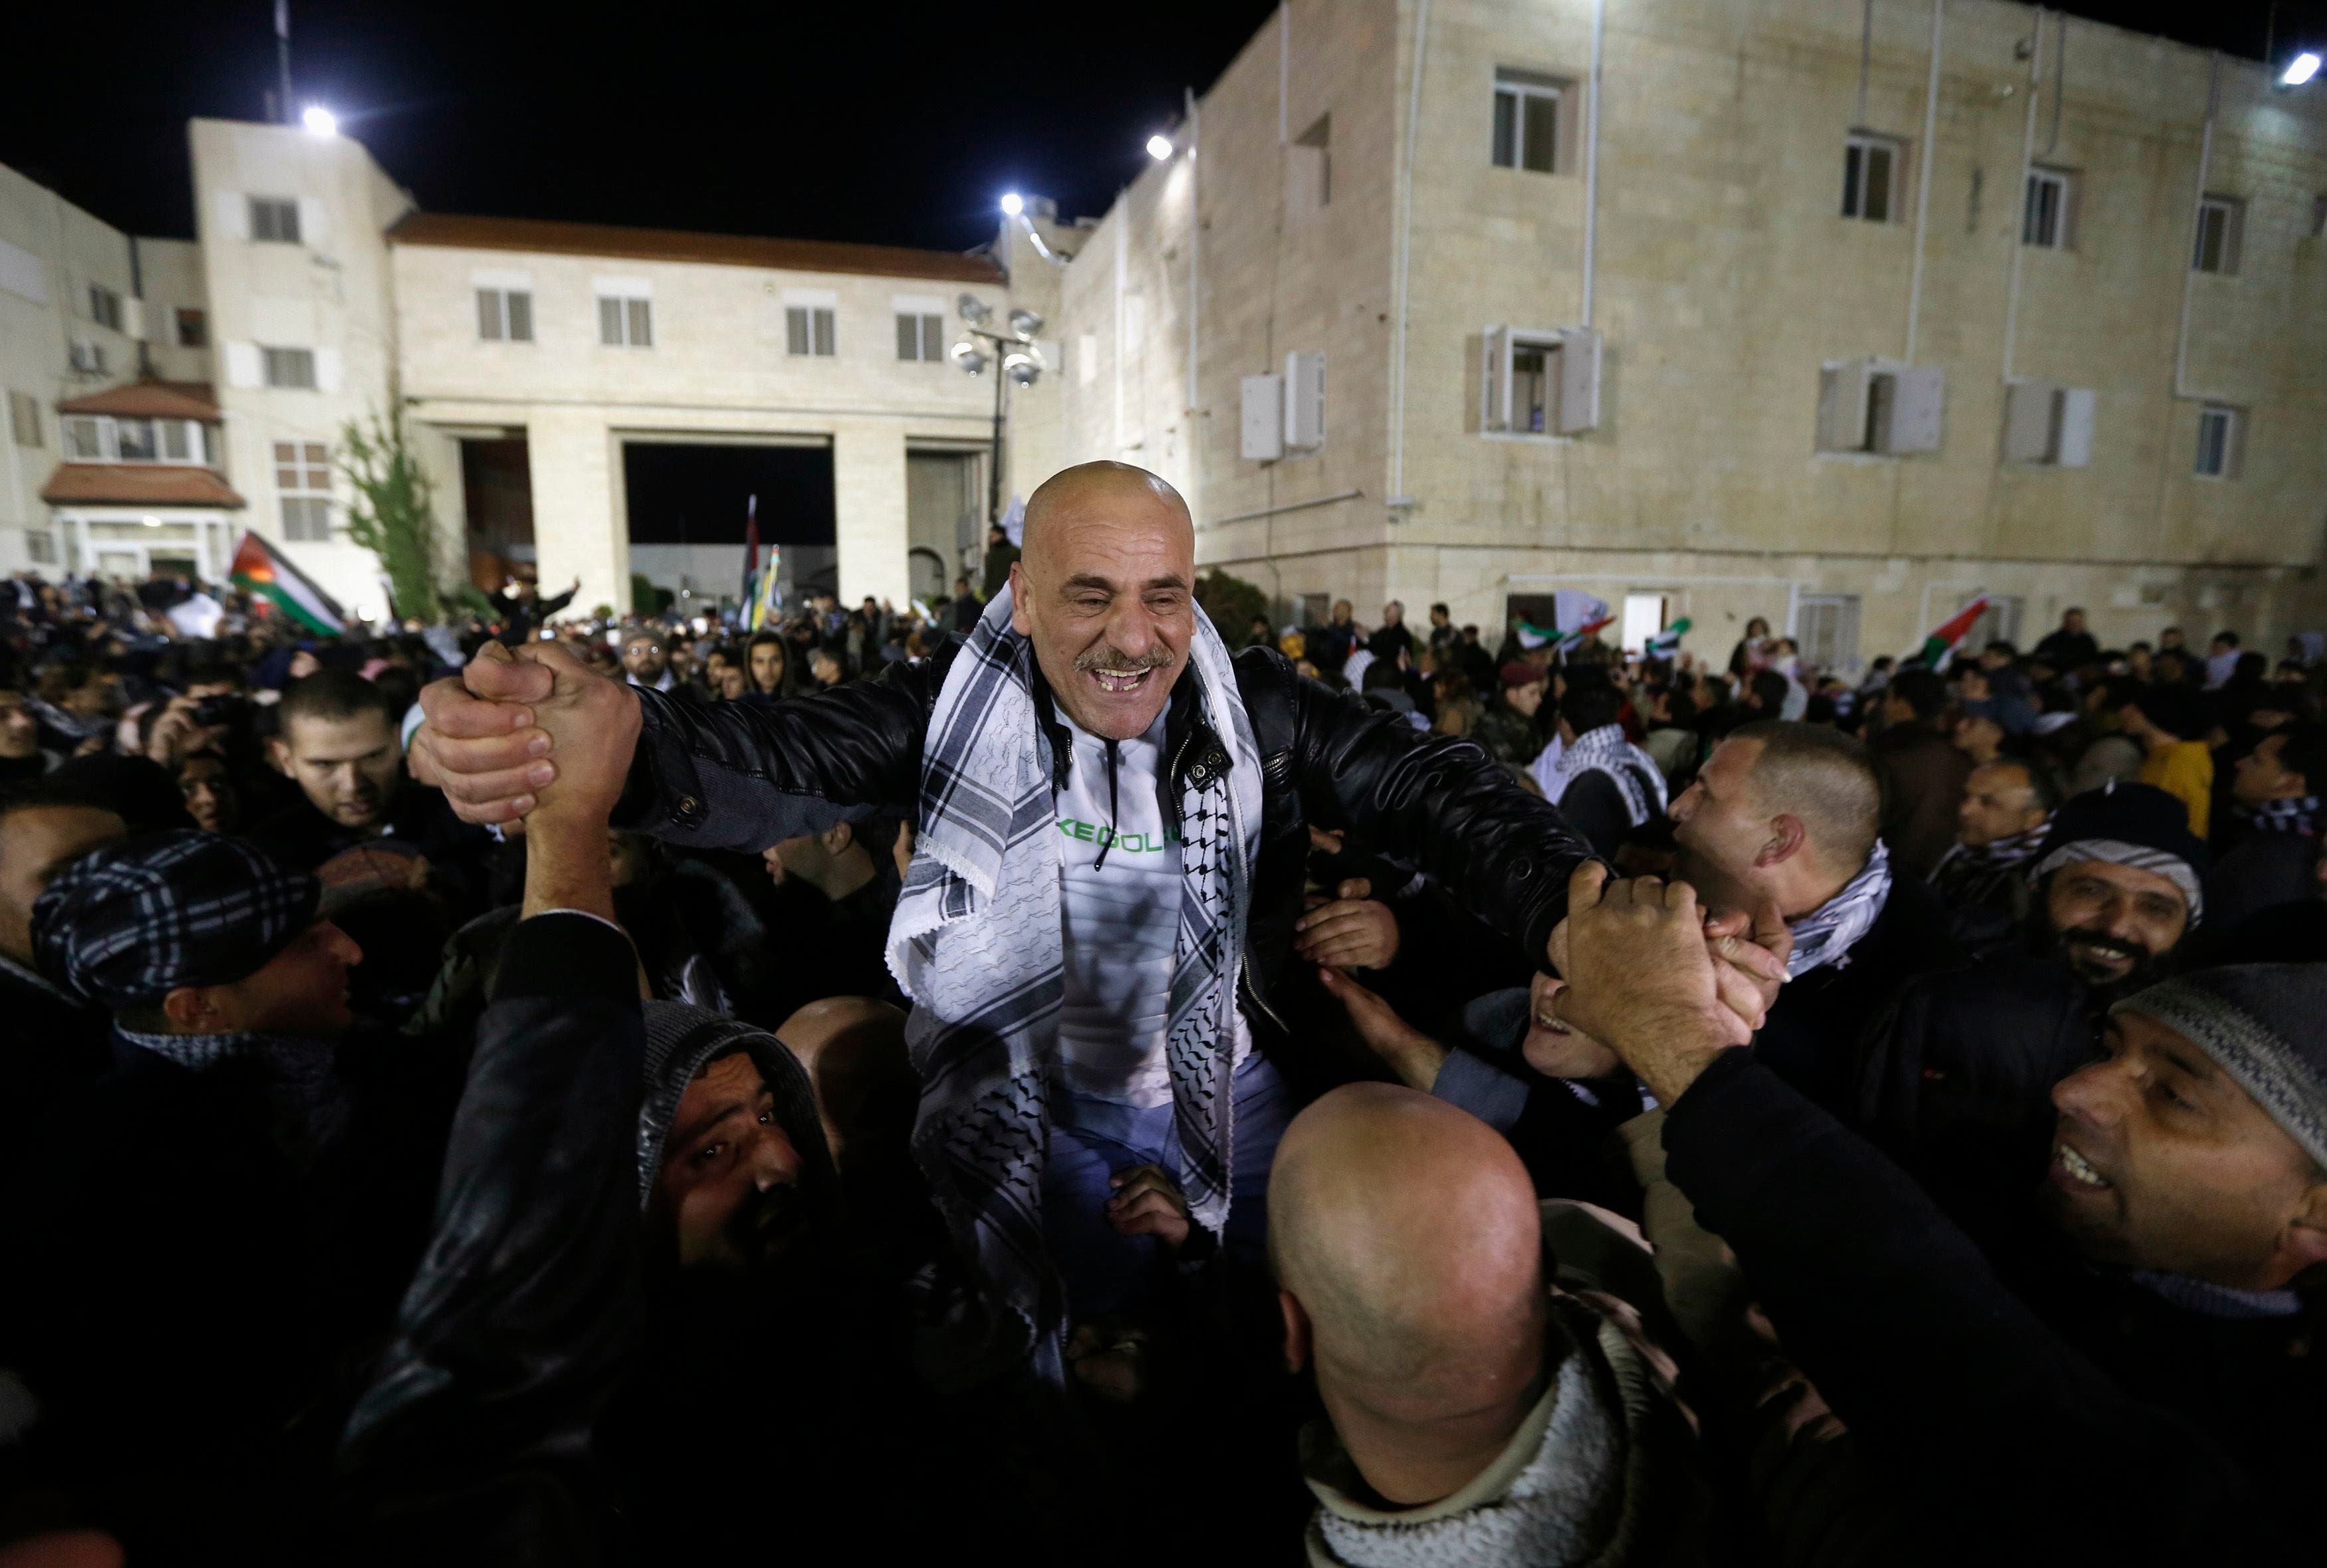 Israel releases Palestinian prisoners